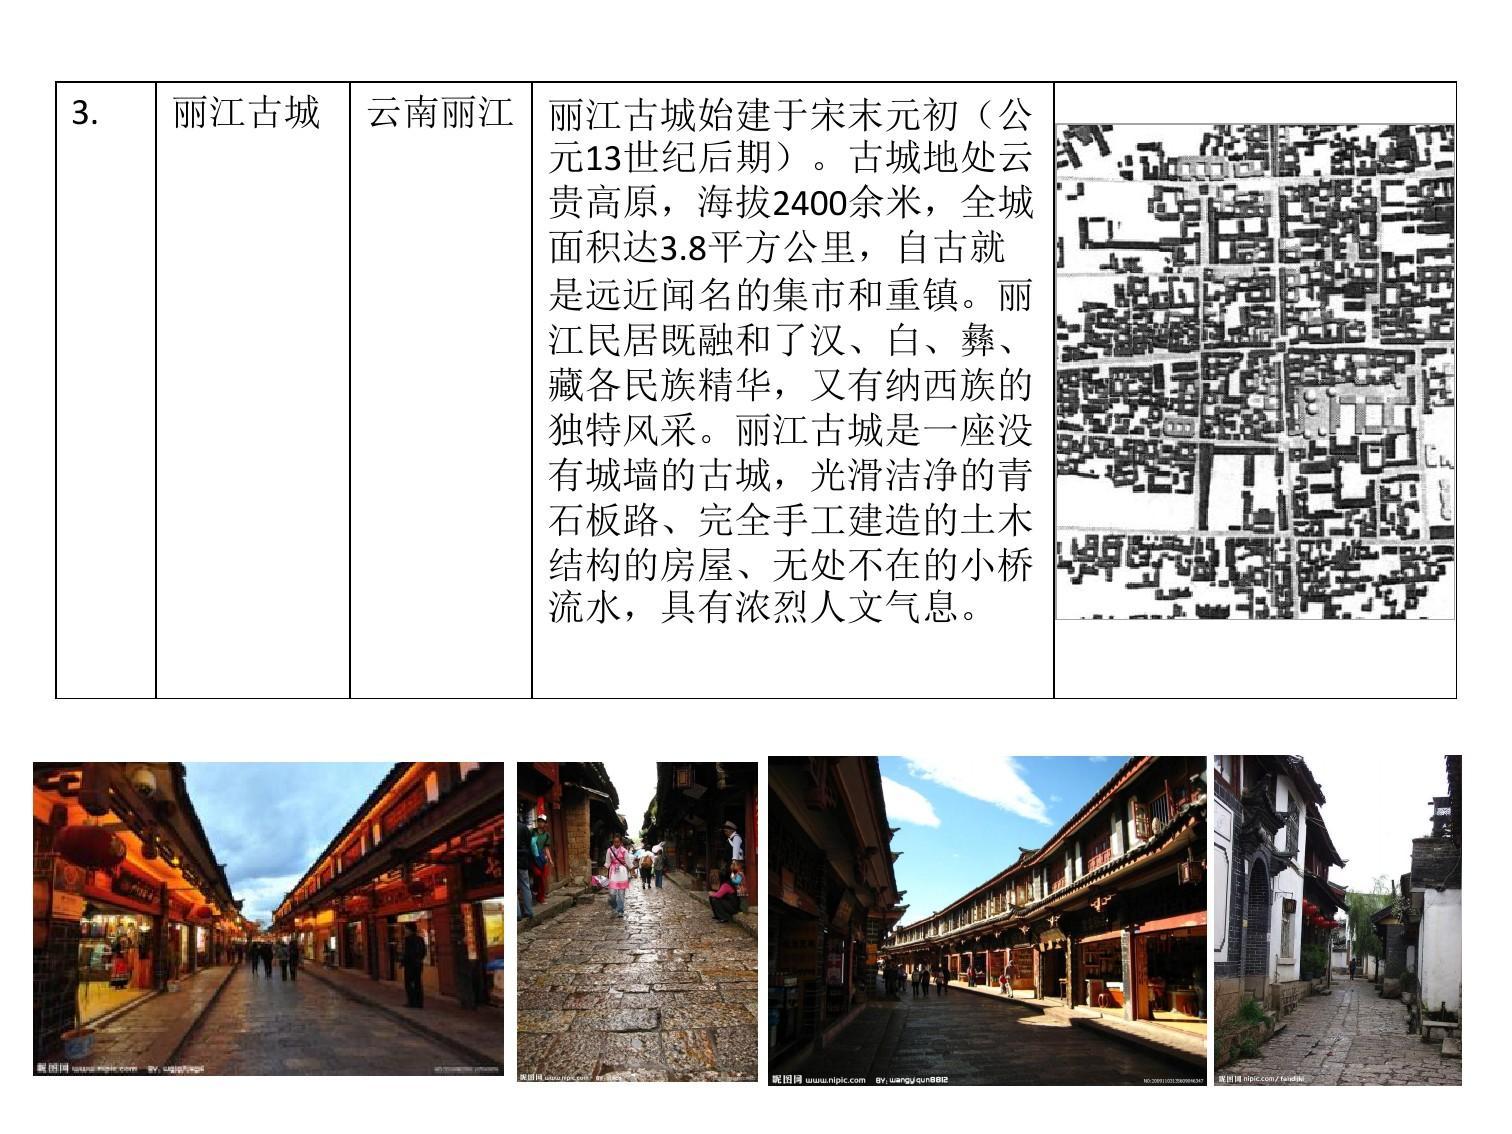 41.中国传统商业街案例分析(详细)